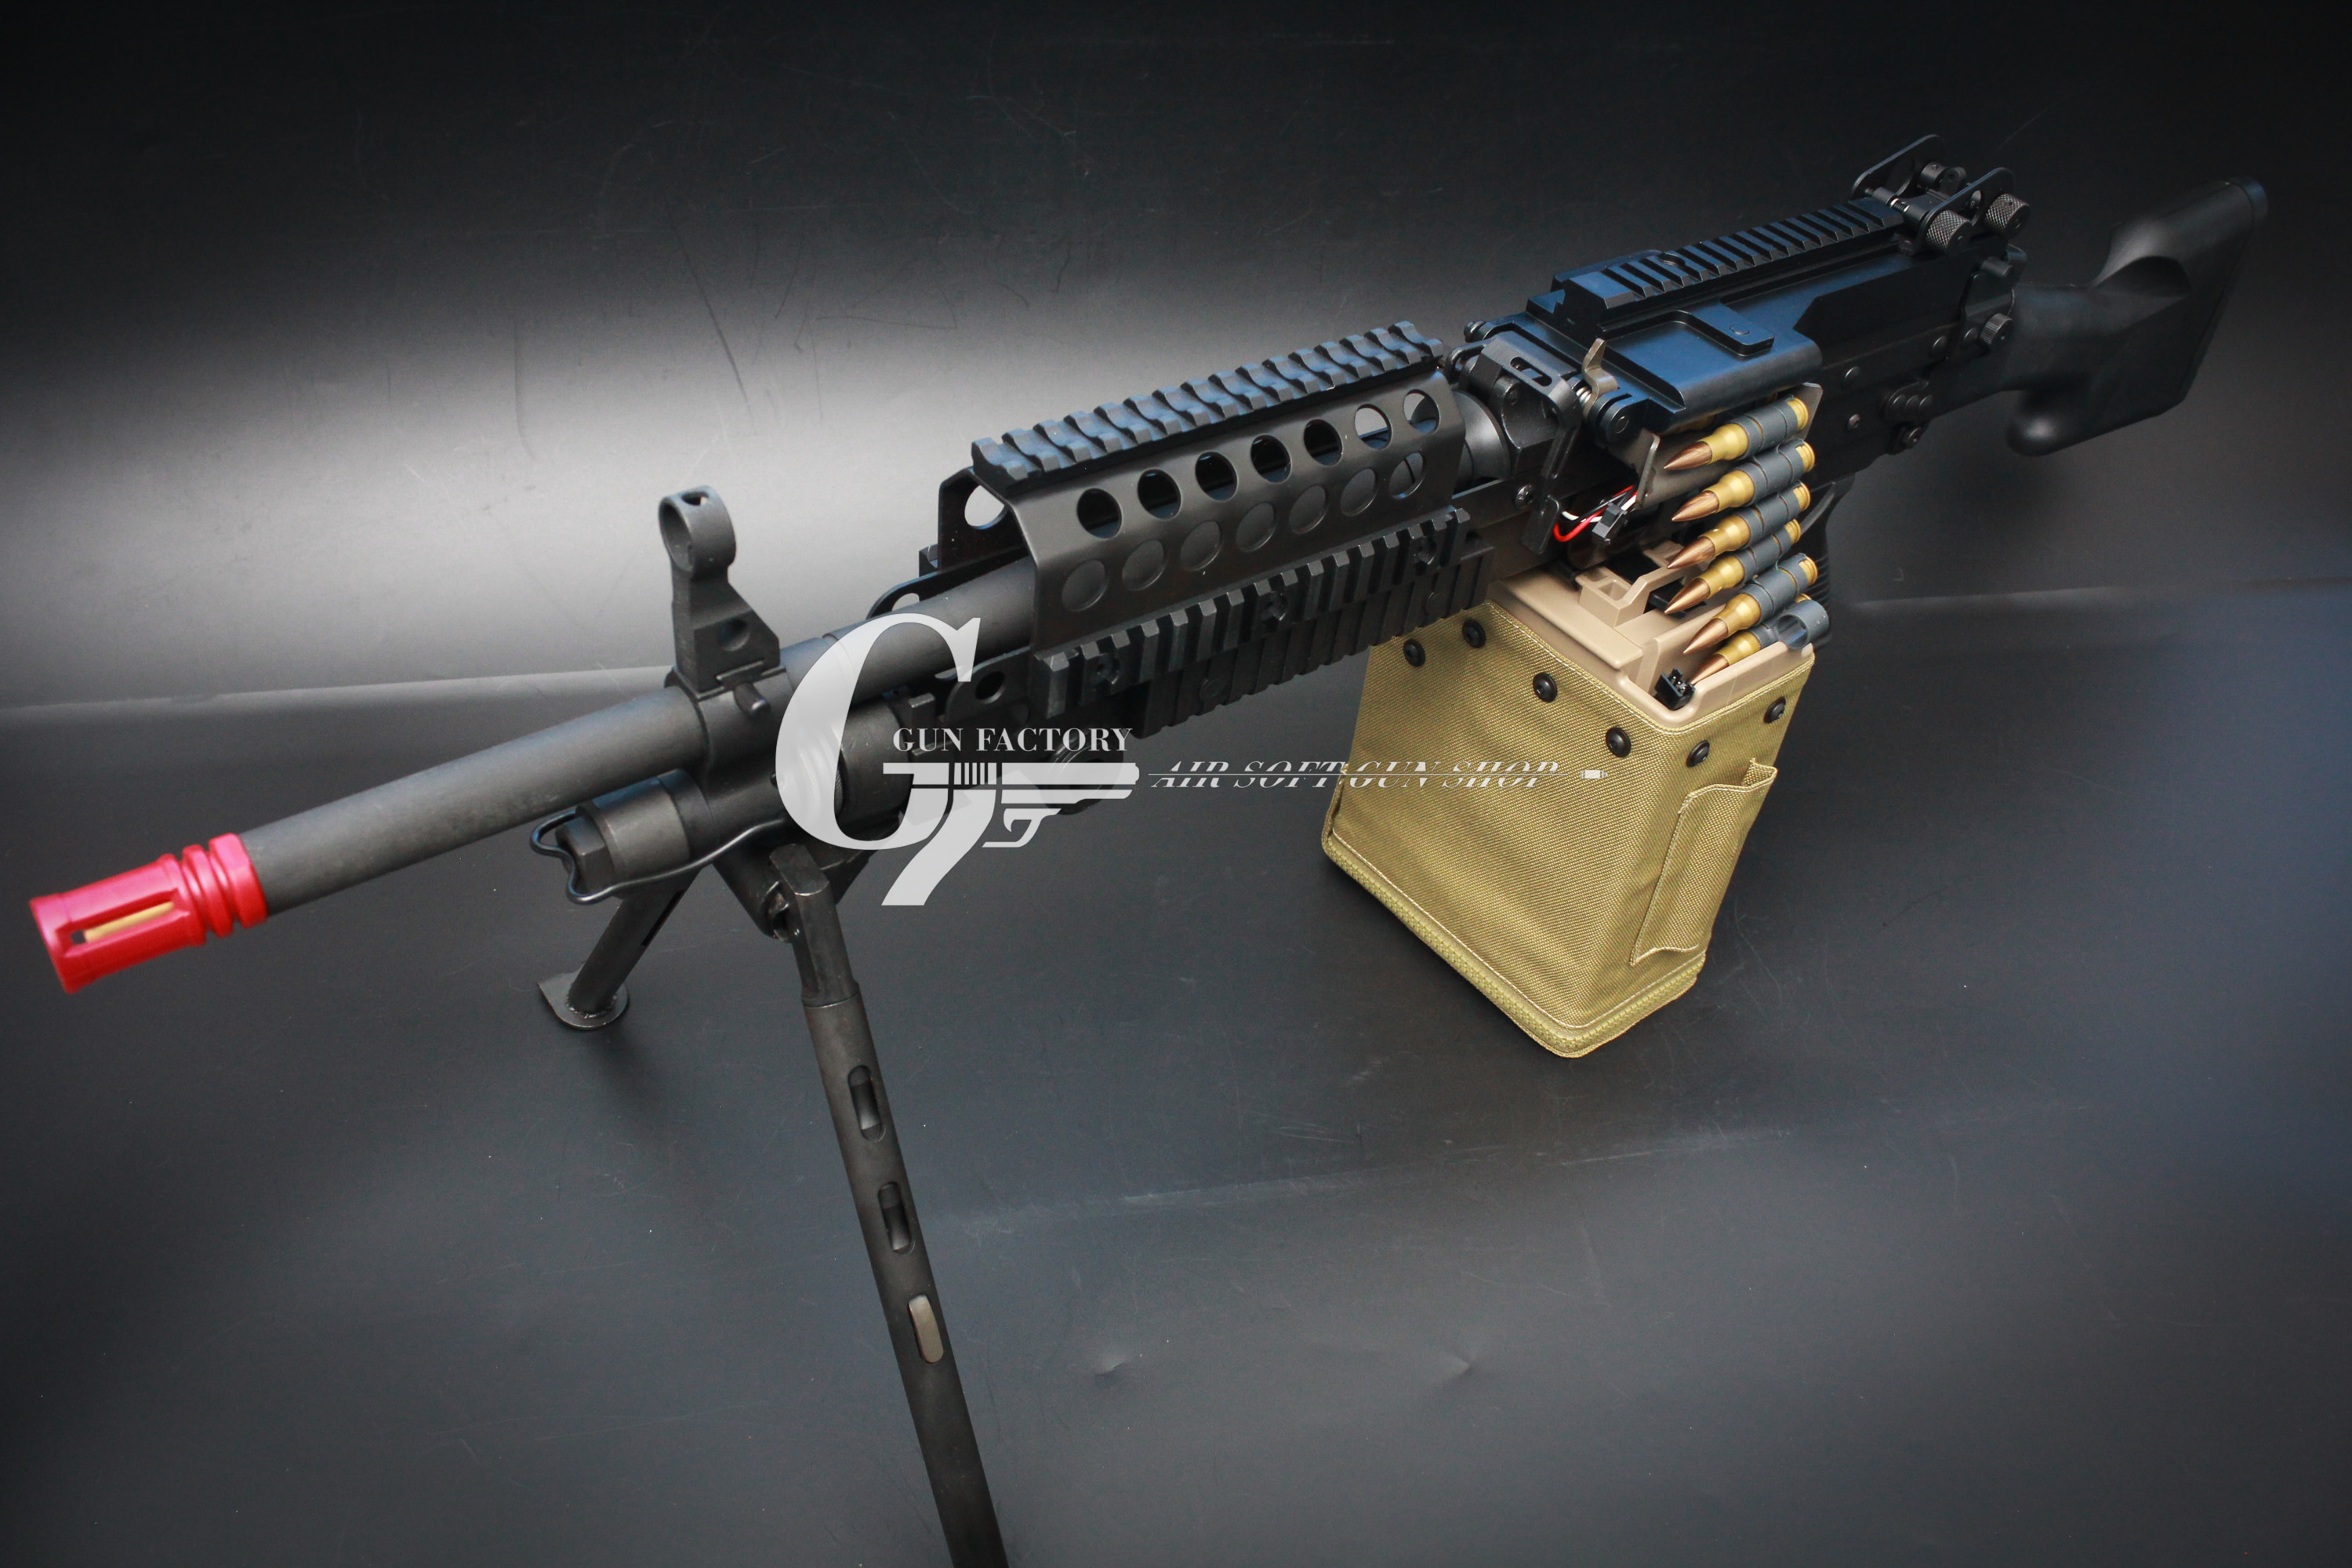 [LAMBDA DEFENCE] MK48 MOD0 Machine Gun - Steel